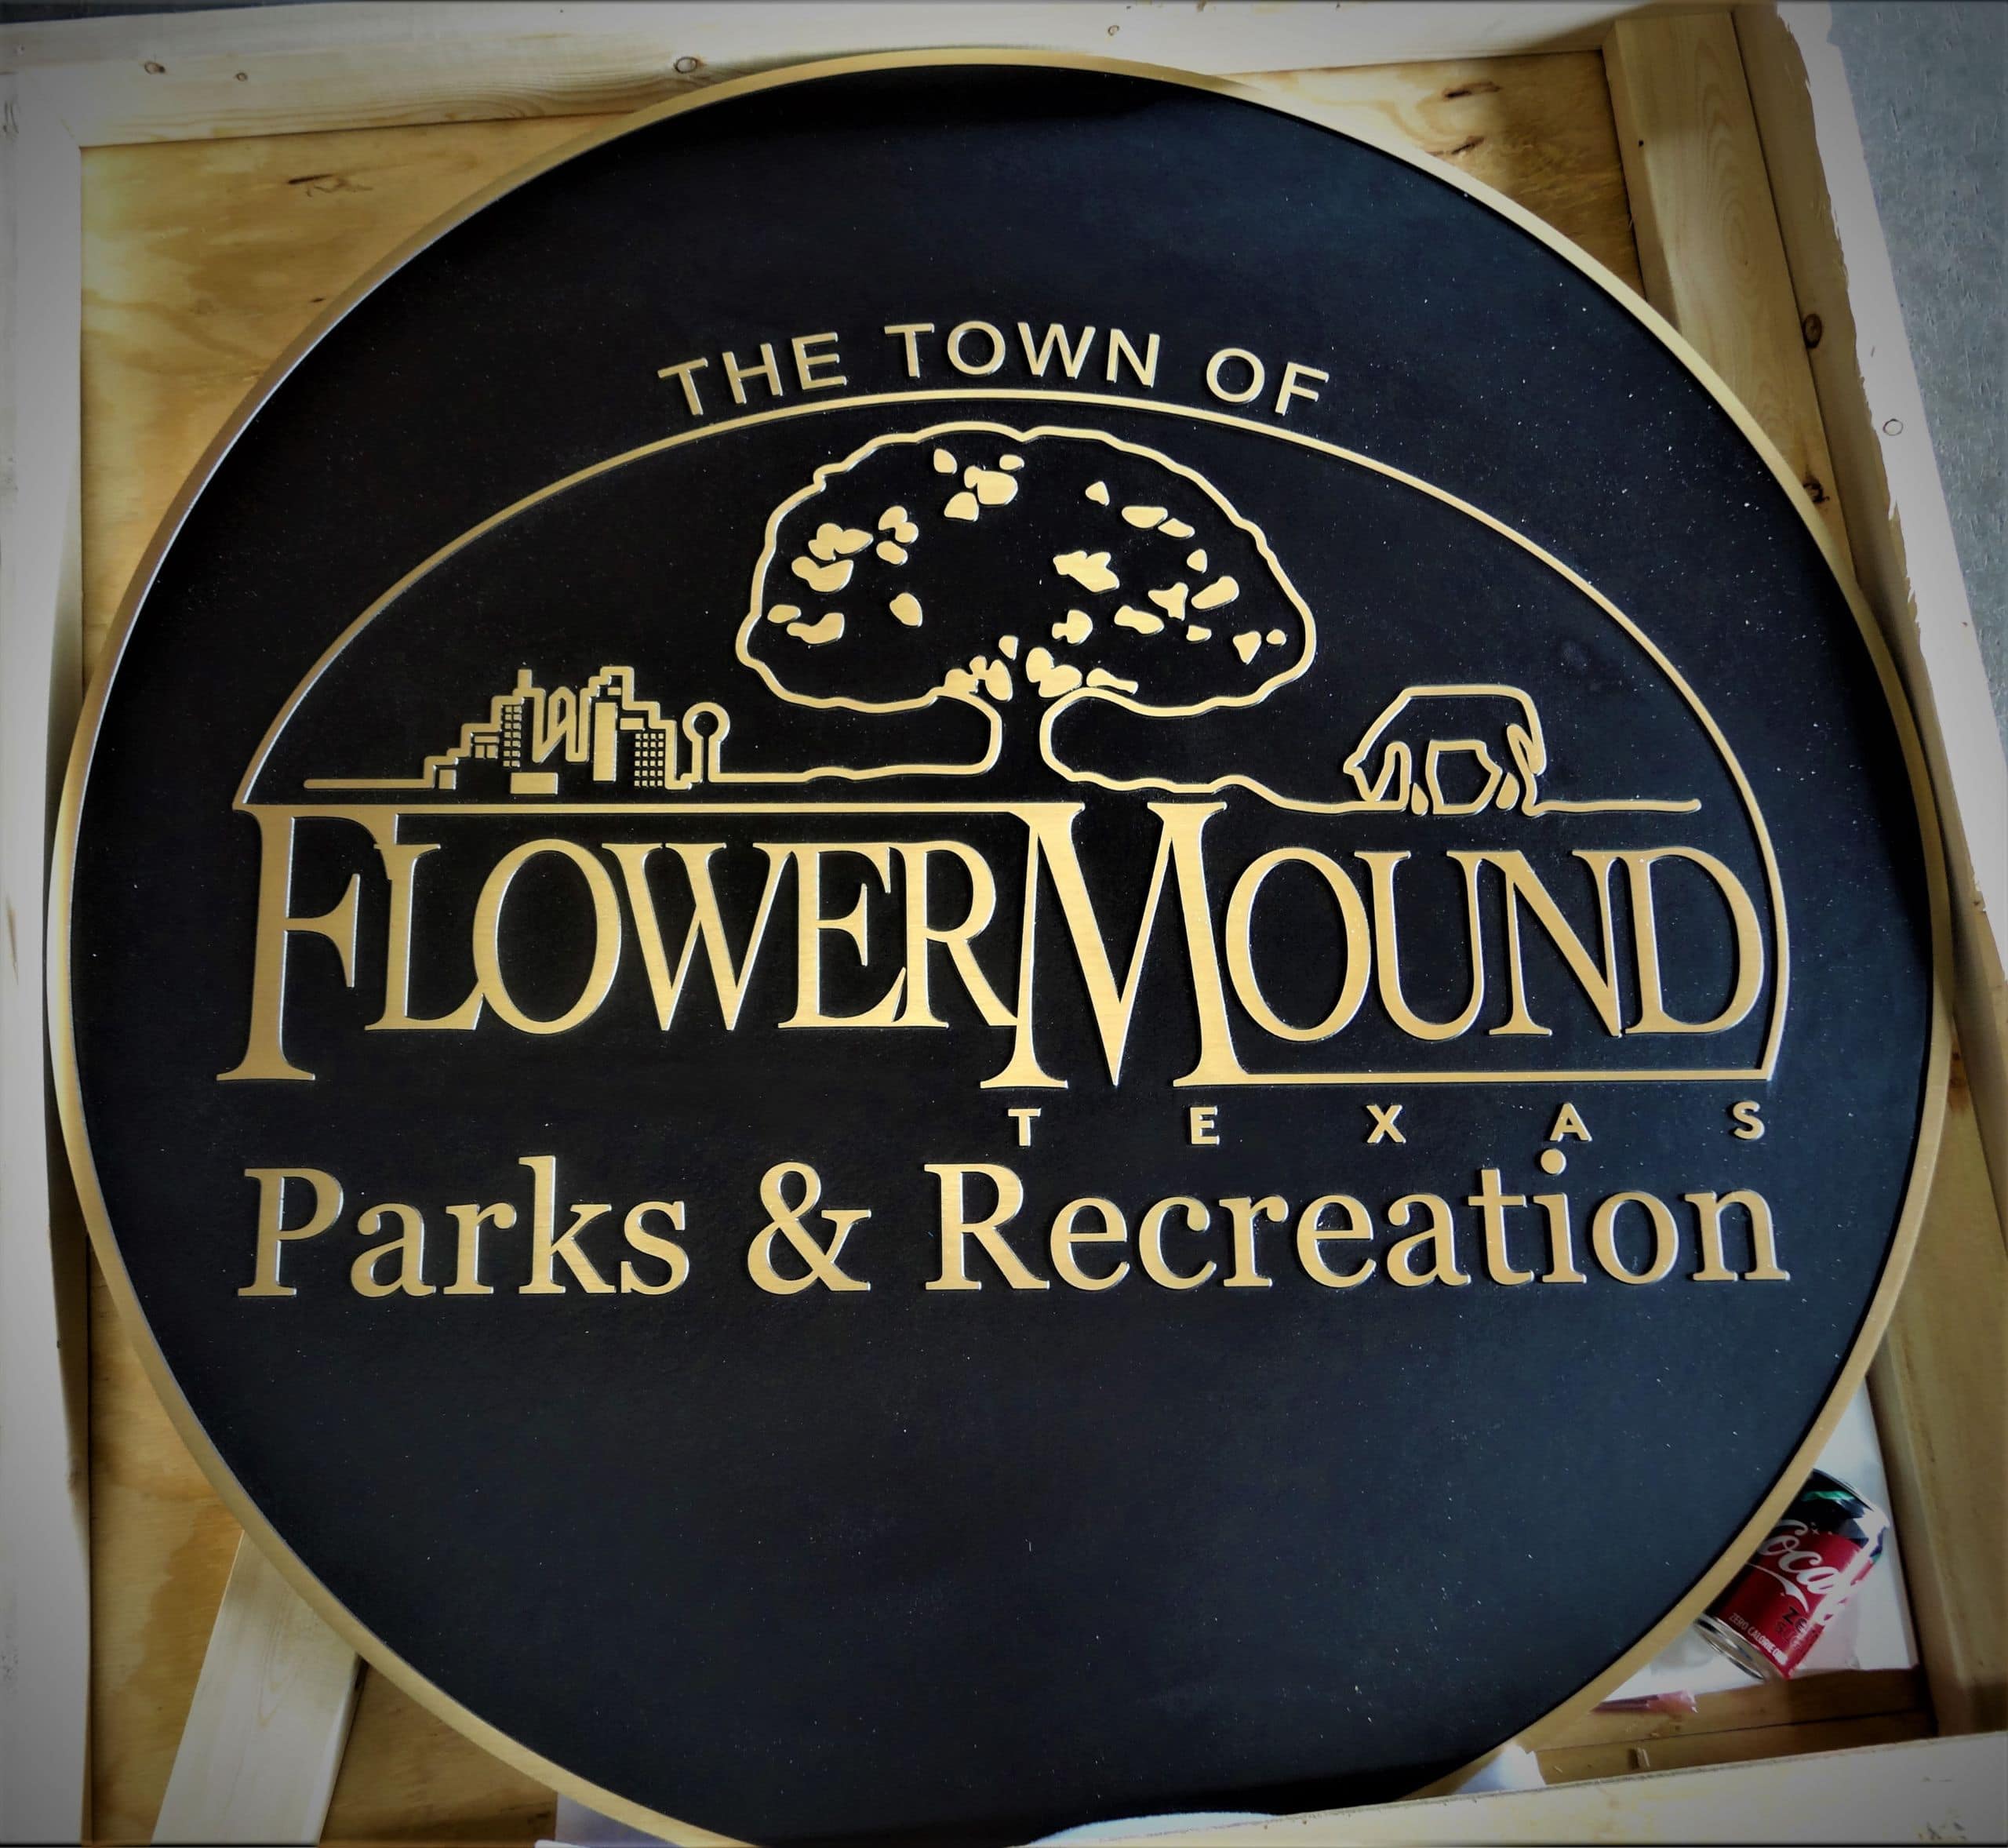 Flower Mound Parks & Recreation